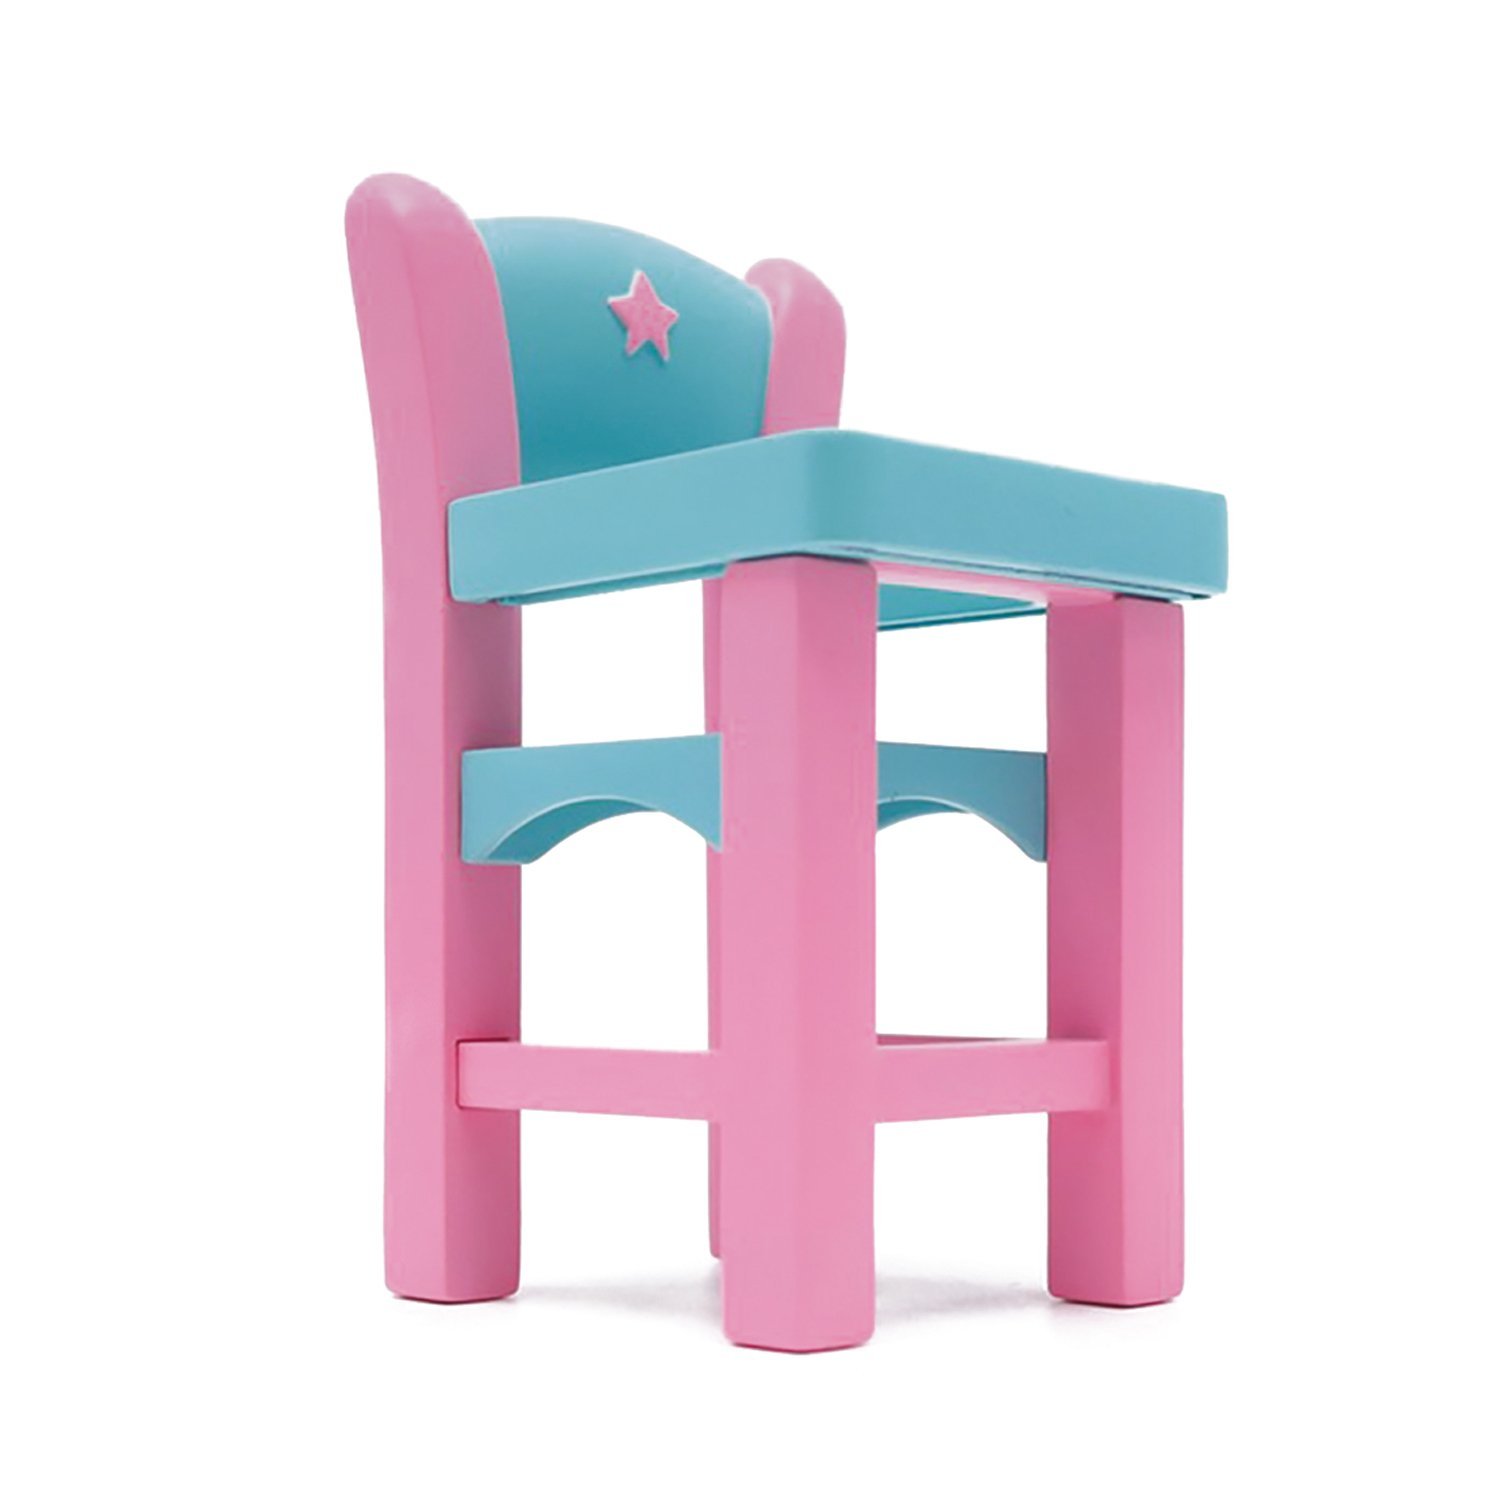 Игровой набор Бэби Секрет - Набор с детским стульчиком, 6 см  